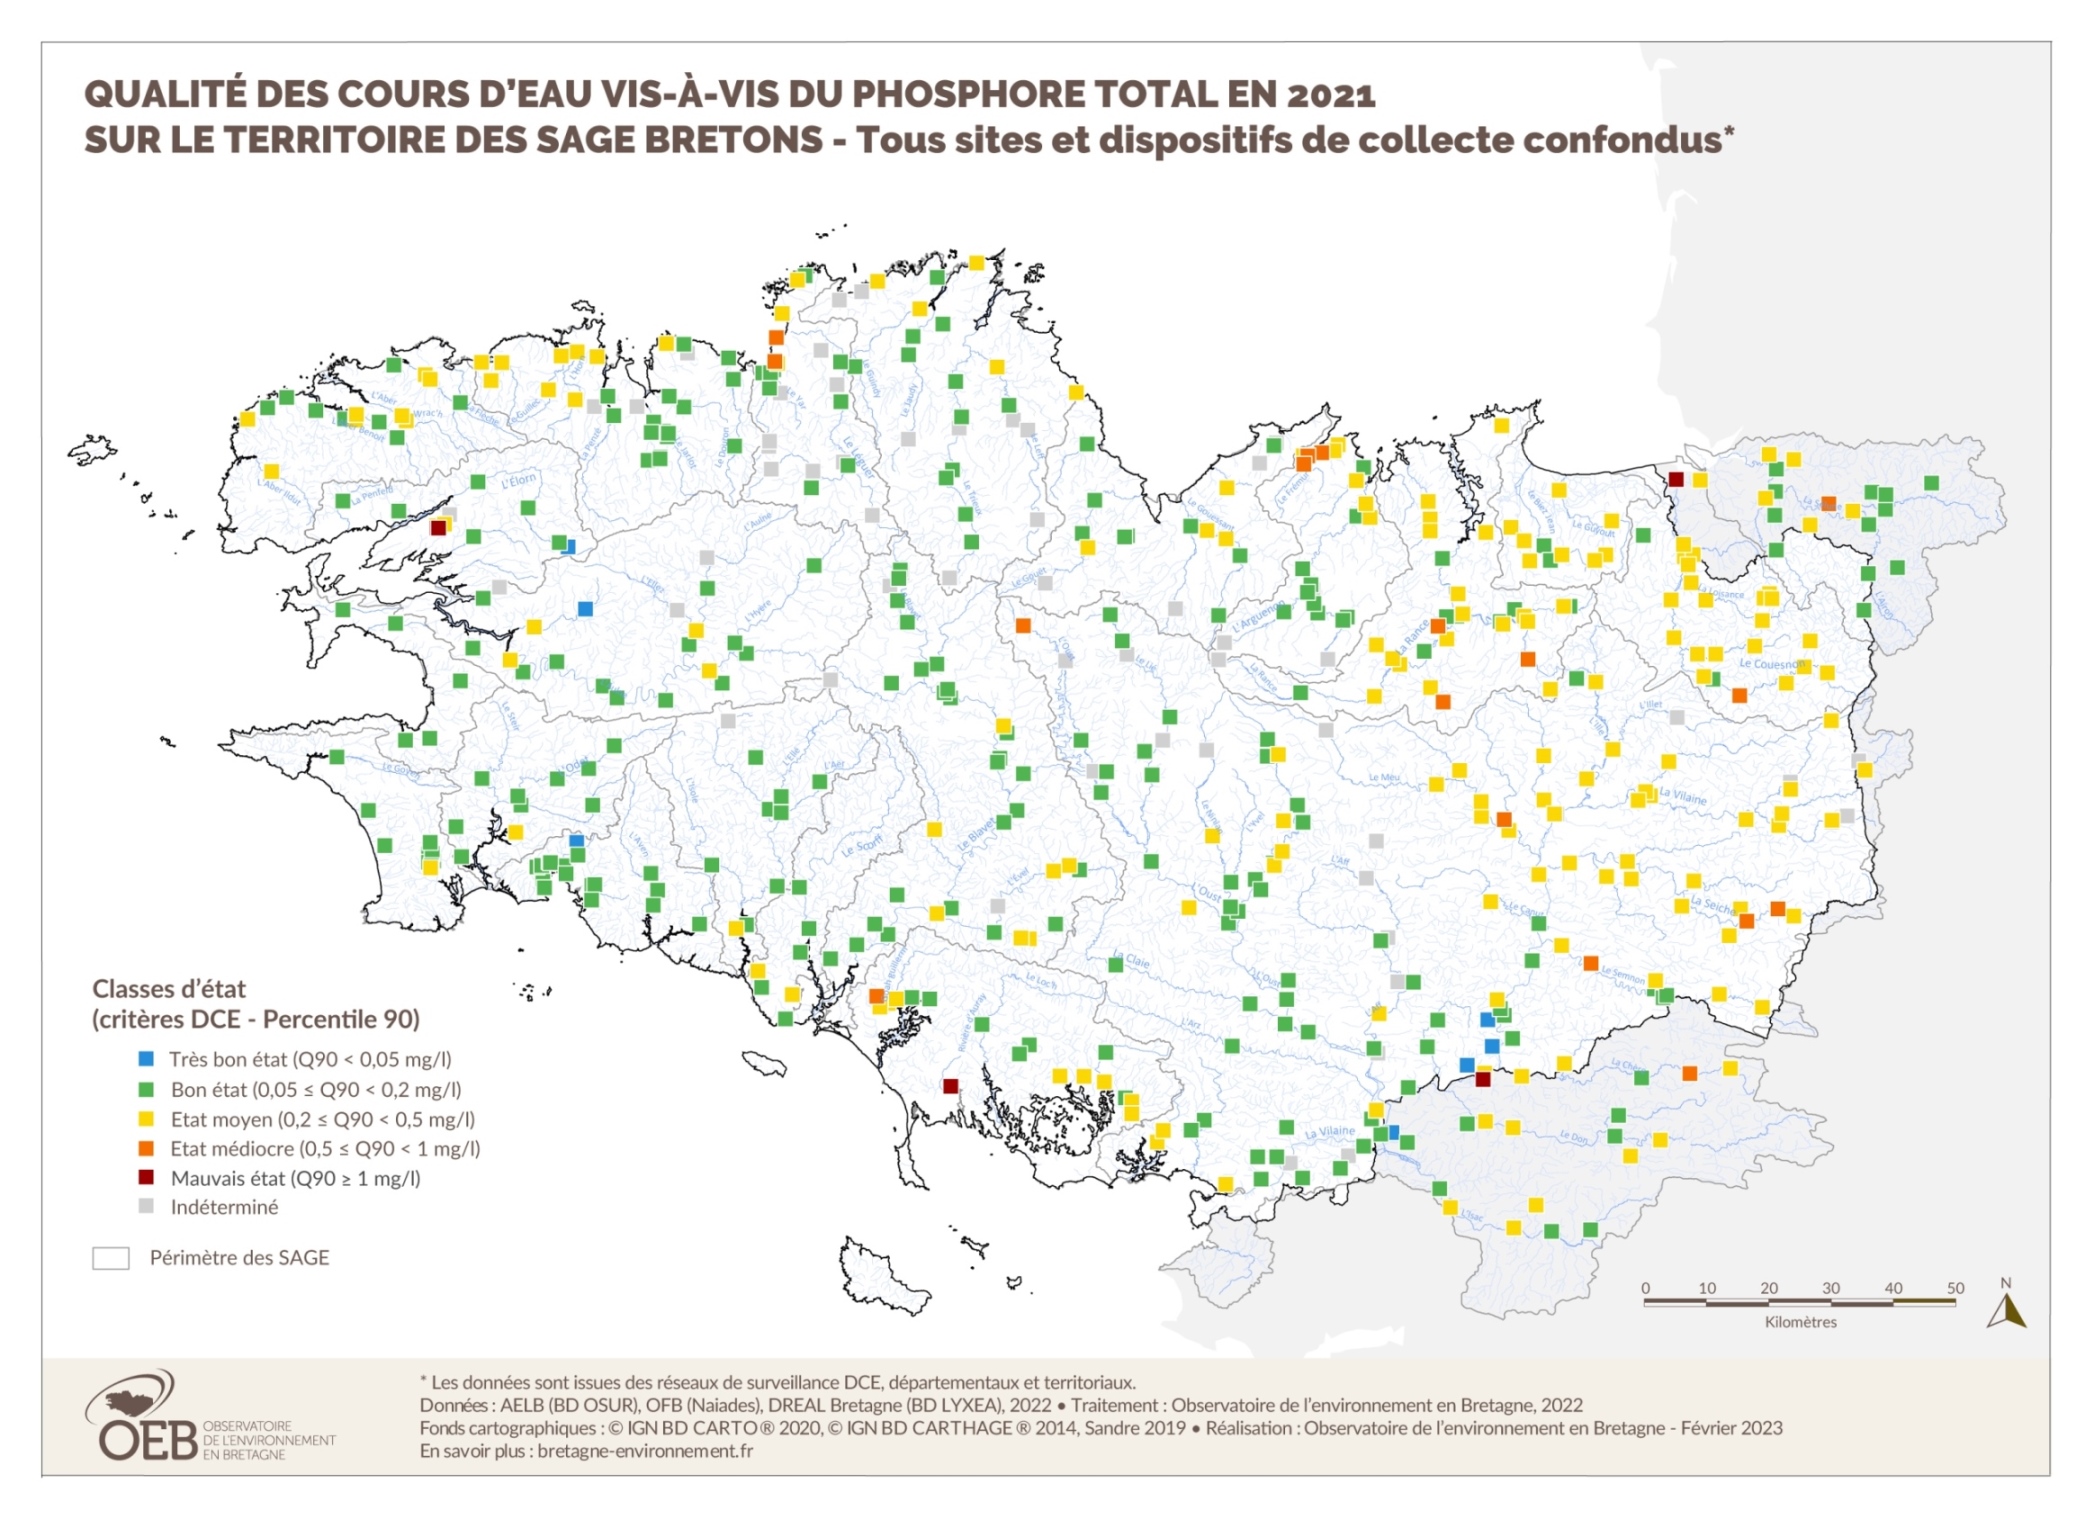 Qualité des cours d'eau bretons vis-à-vis du phosphore total en 2021